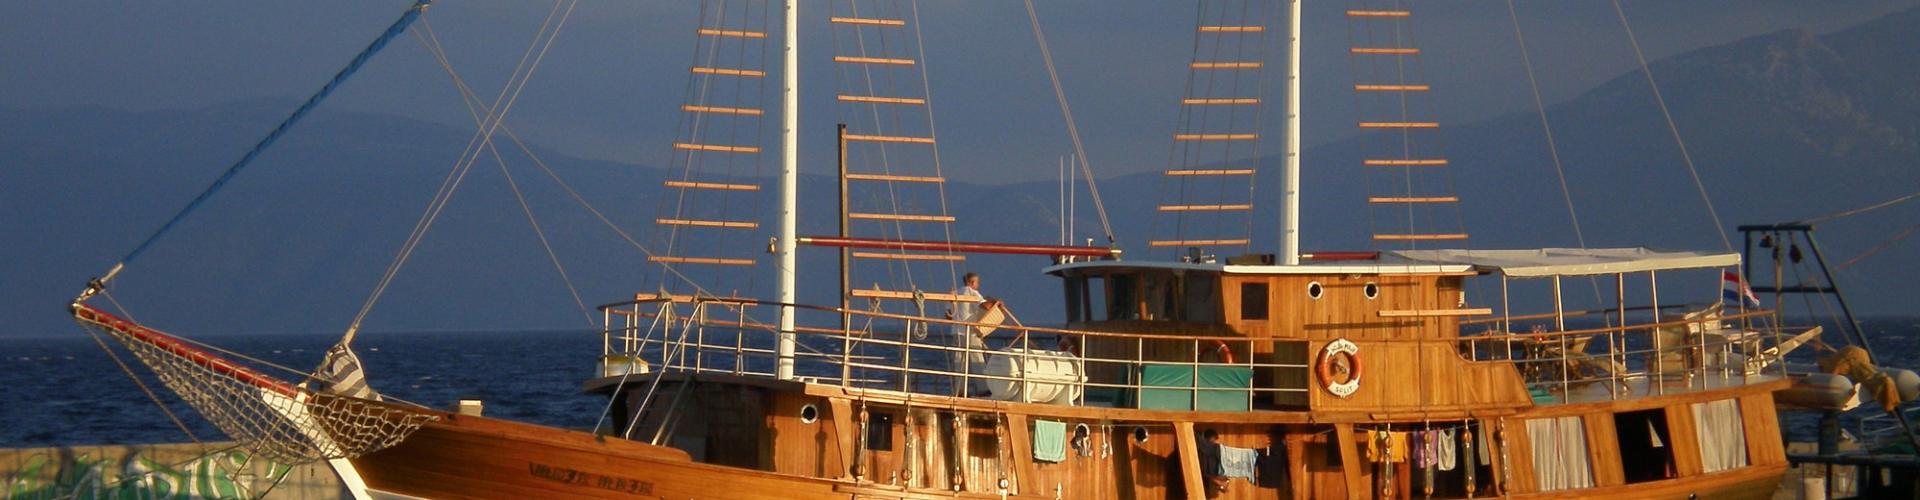 Tradicionalni brod za krstarenje Moja Maja- drveni motorni jedrenjak